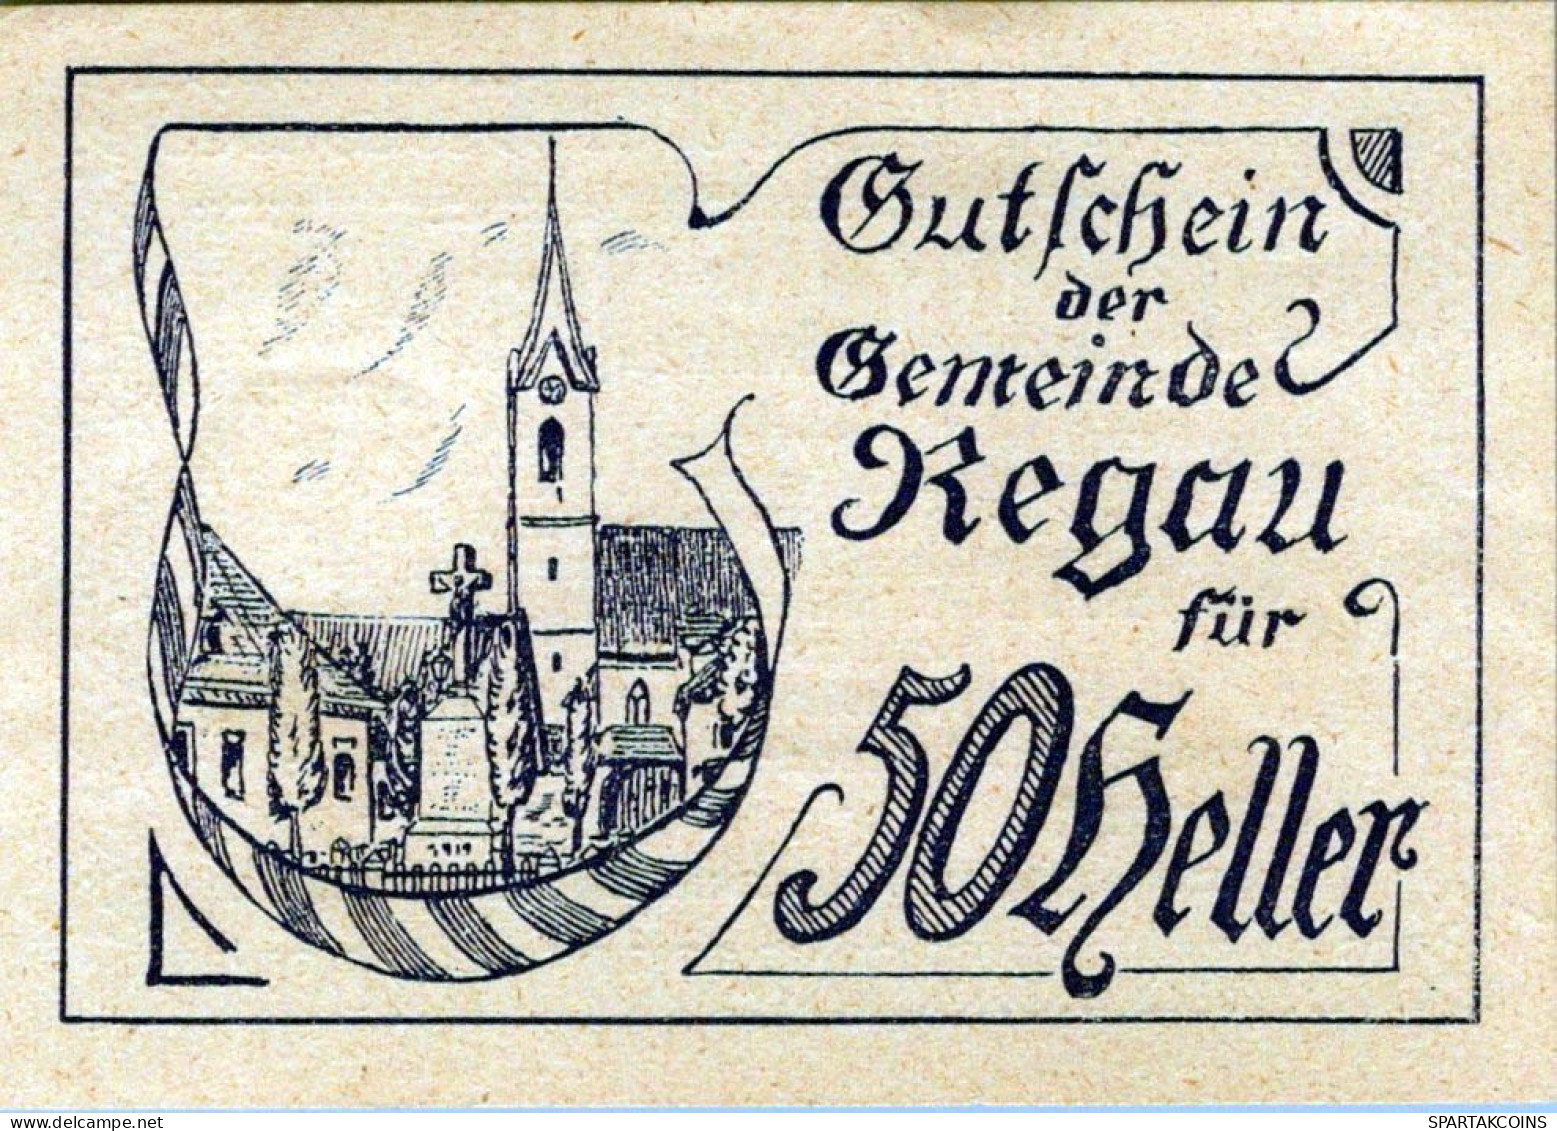 50 HELLER 1920 Stadt REGAU Oberösterreich Österreich UNC Österreich Notgeld Banknote #PH058 - [11] Emissions Locales